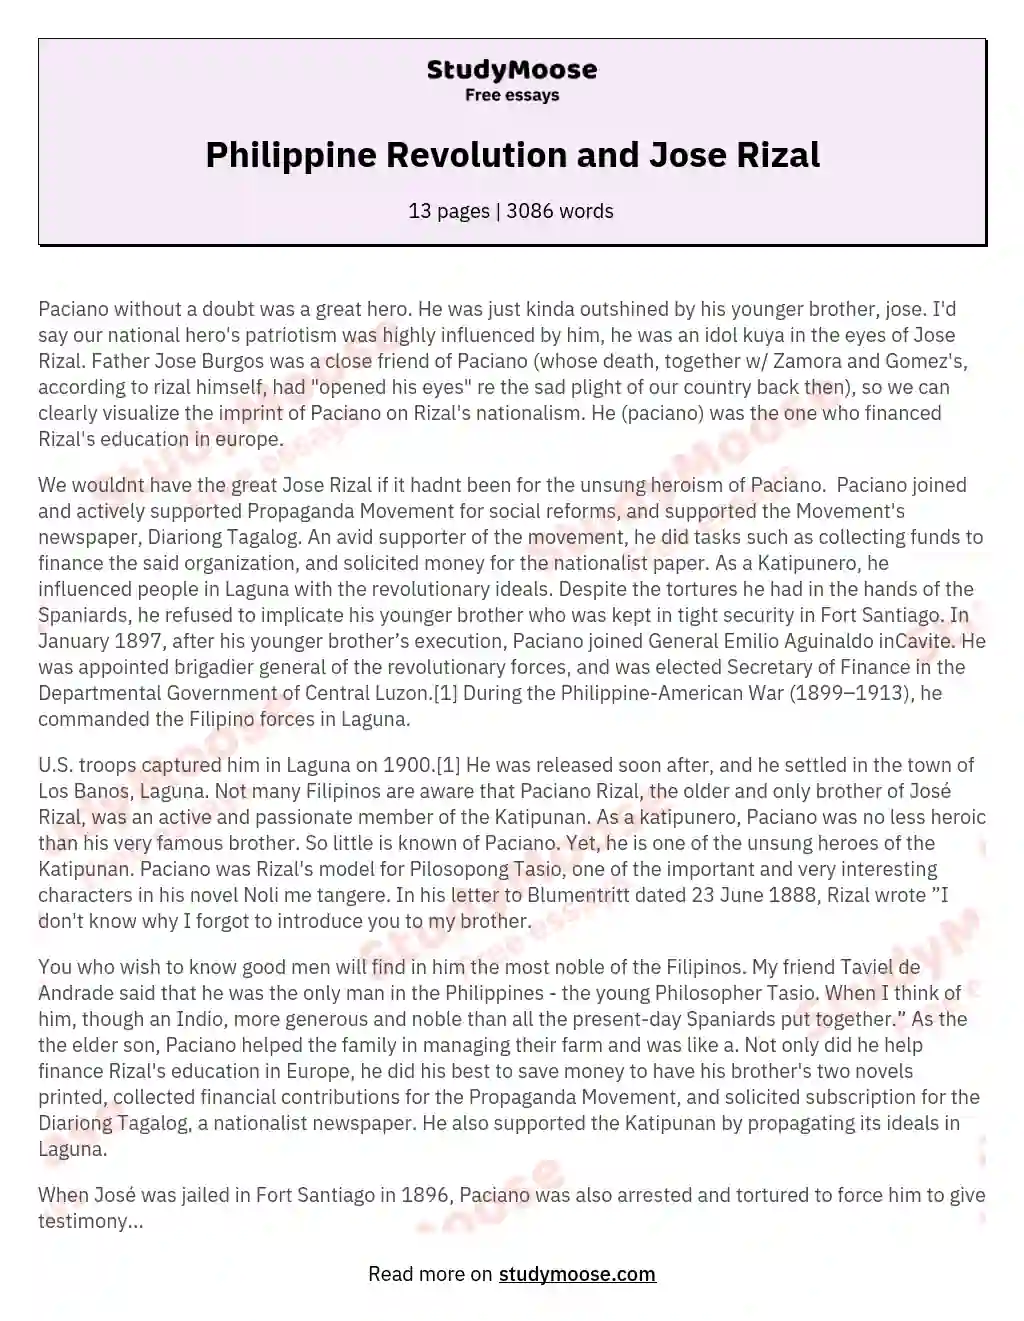 Philippine Revolution and Jose Rizal essay